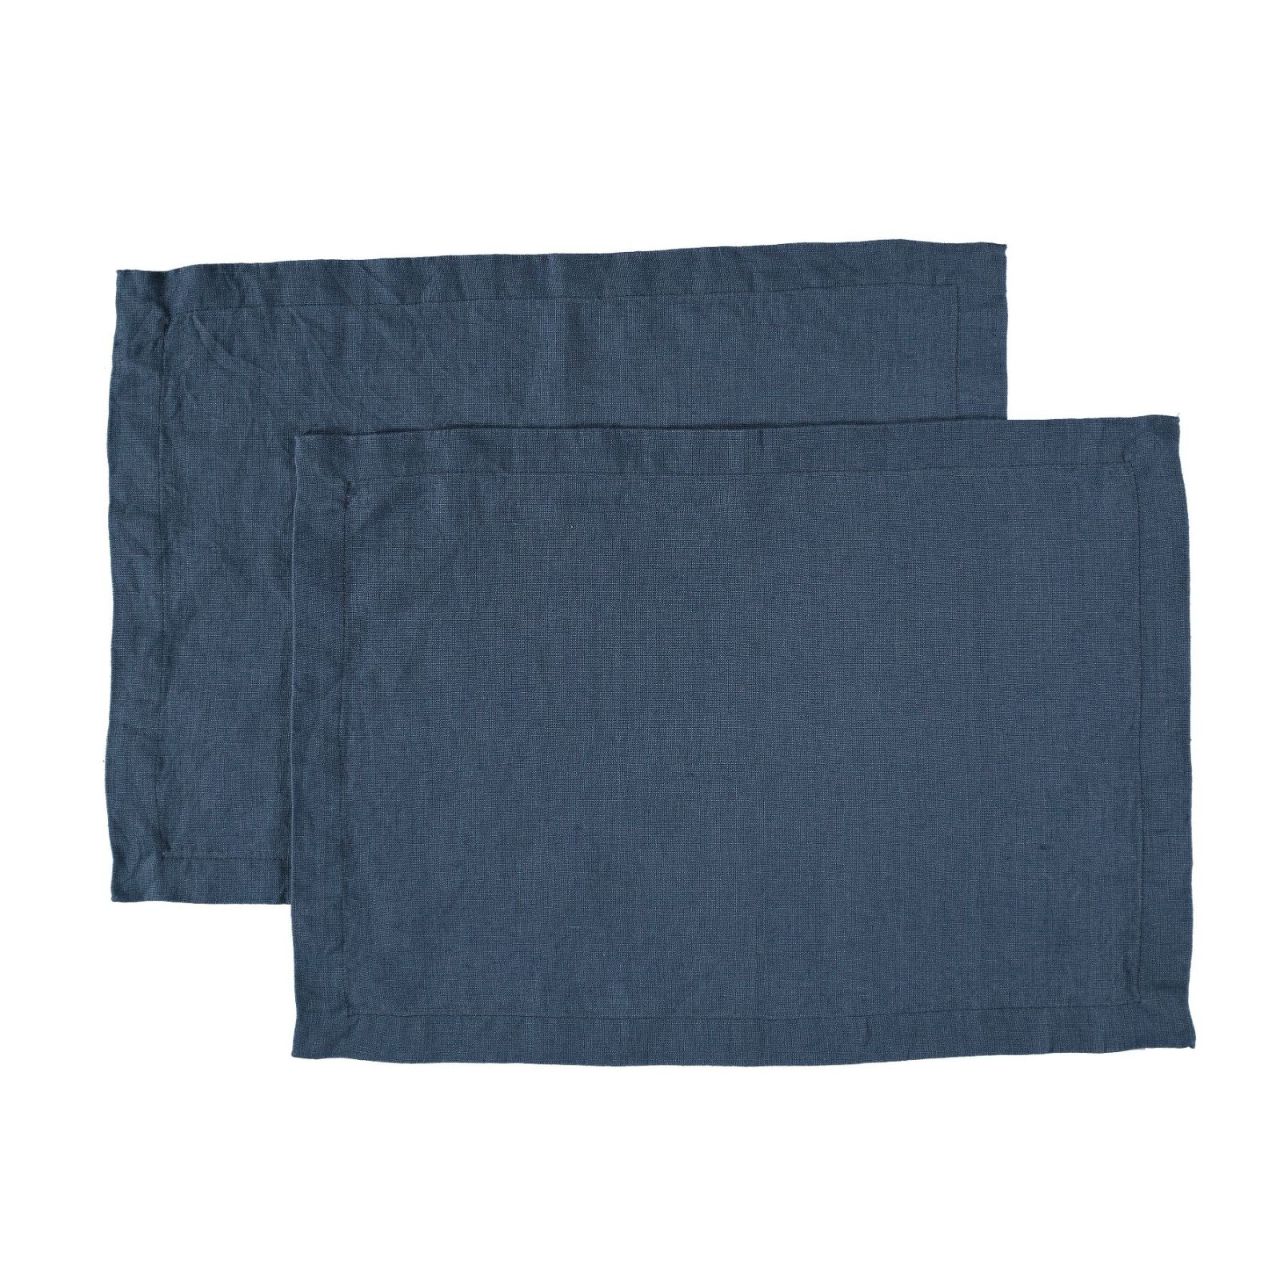 Bordstablett i tvättat linne som ger en mjuk känsla och en fin patina från Gripsholm i 2-pack i marinblått. 35 x 45 cm.